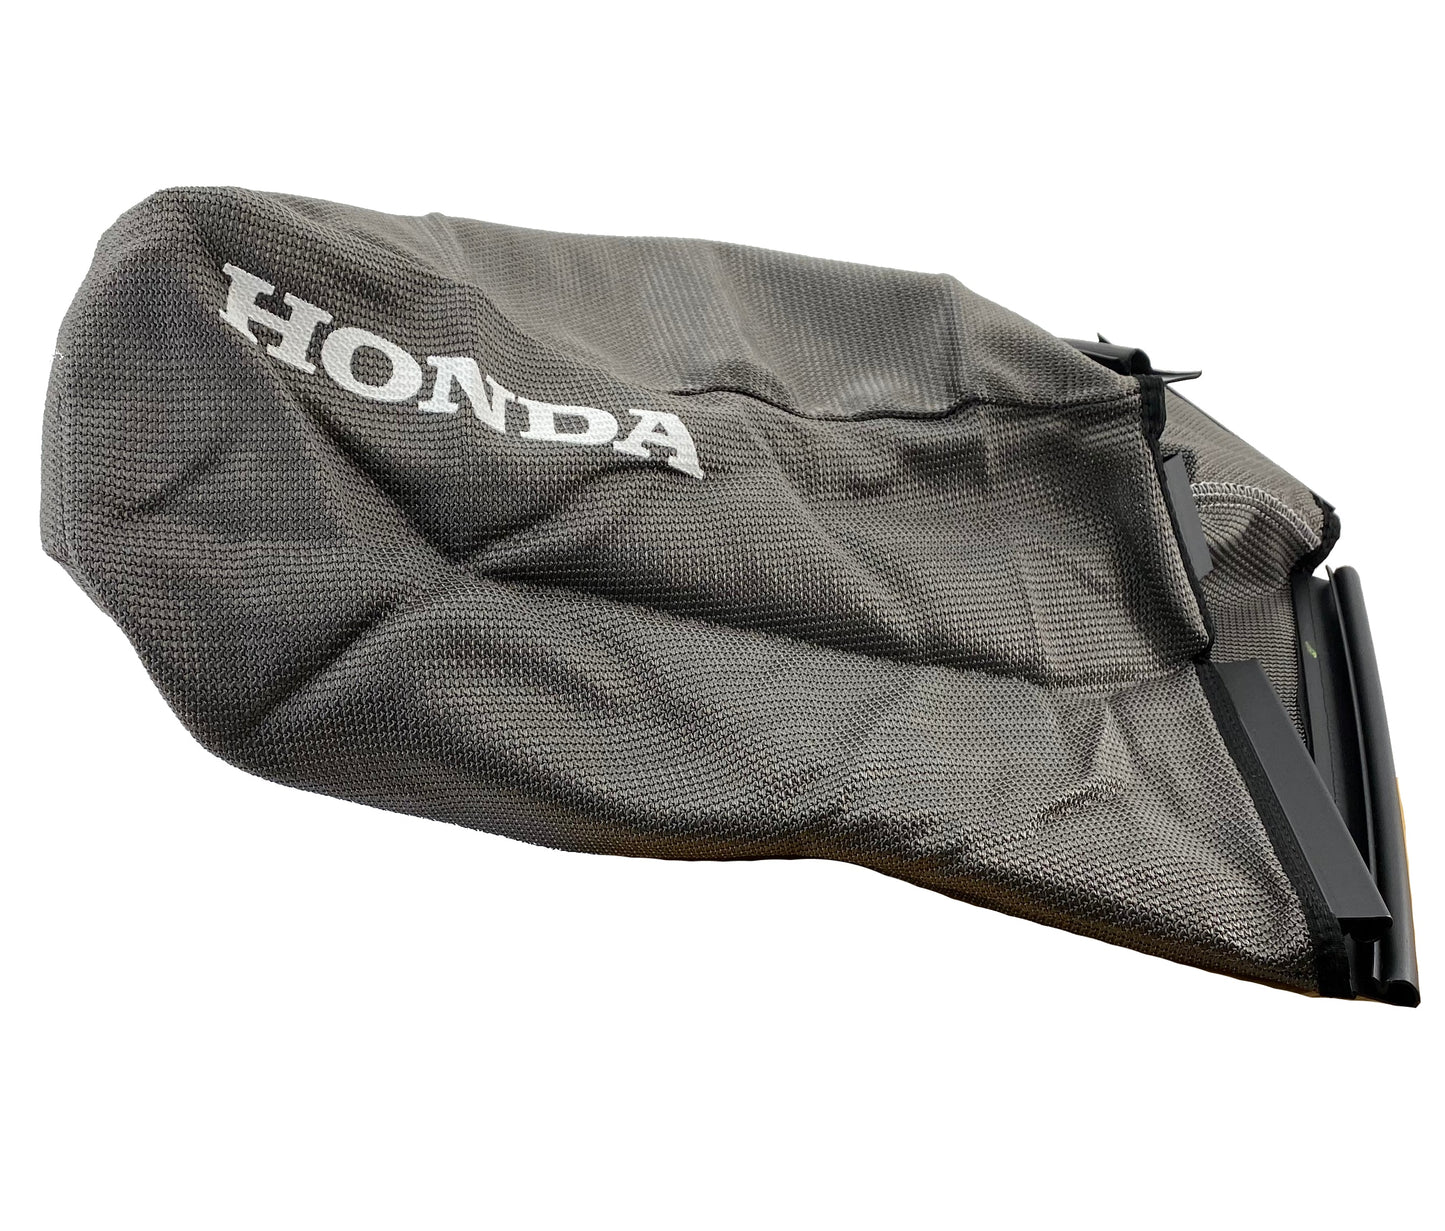 Honda Original Equipment Grass Bag Fabric - 81320-VE1-T10